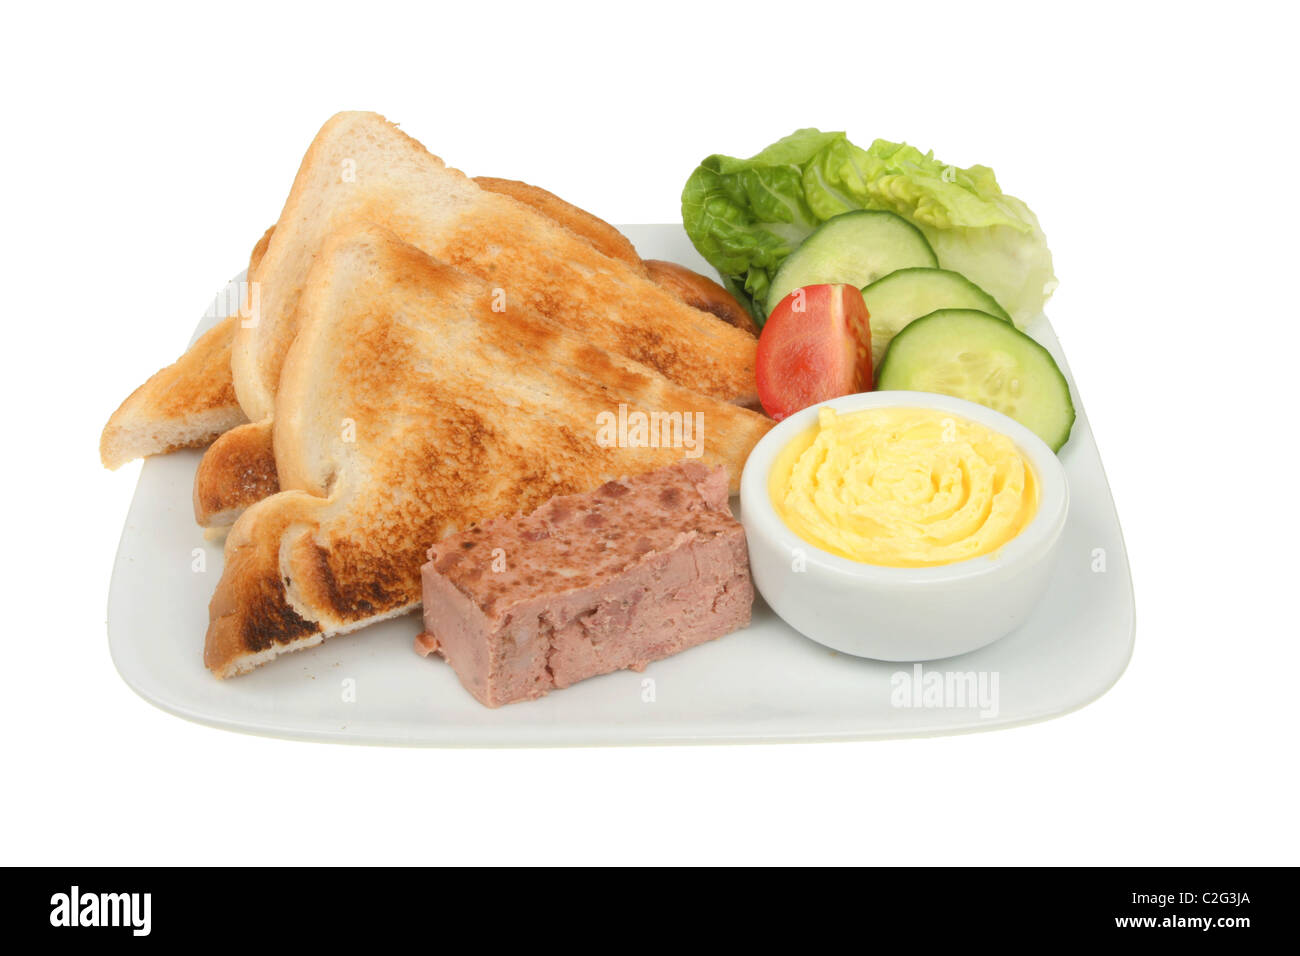 Pate,pain grillé et salade sur une assiette Banque D'Images